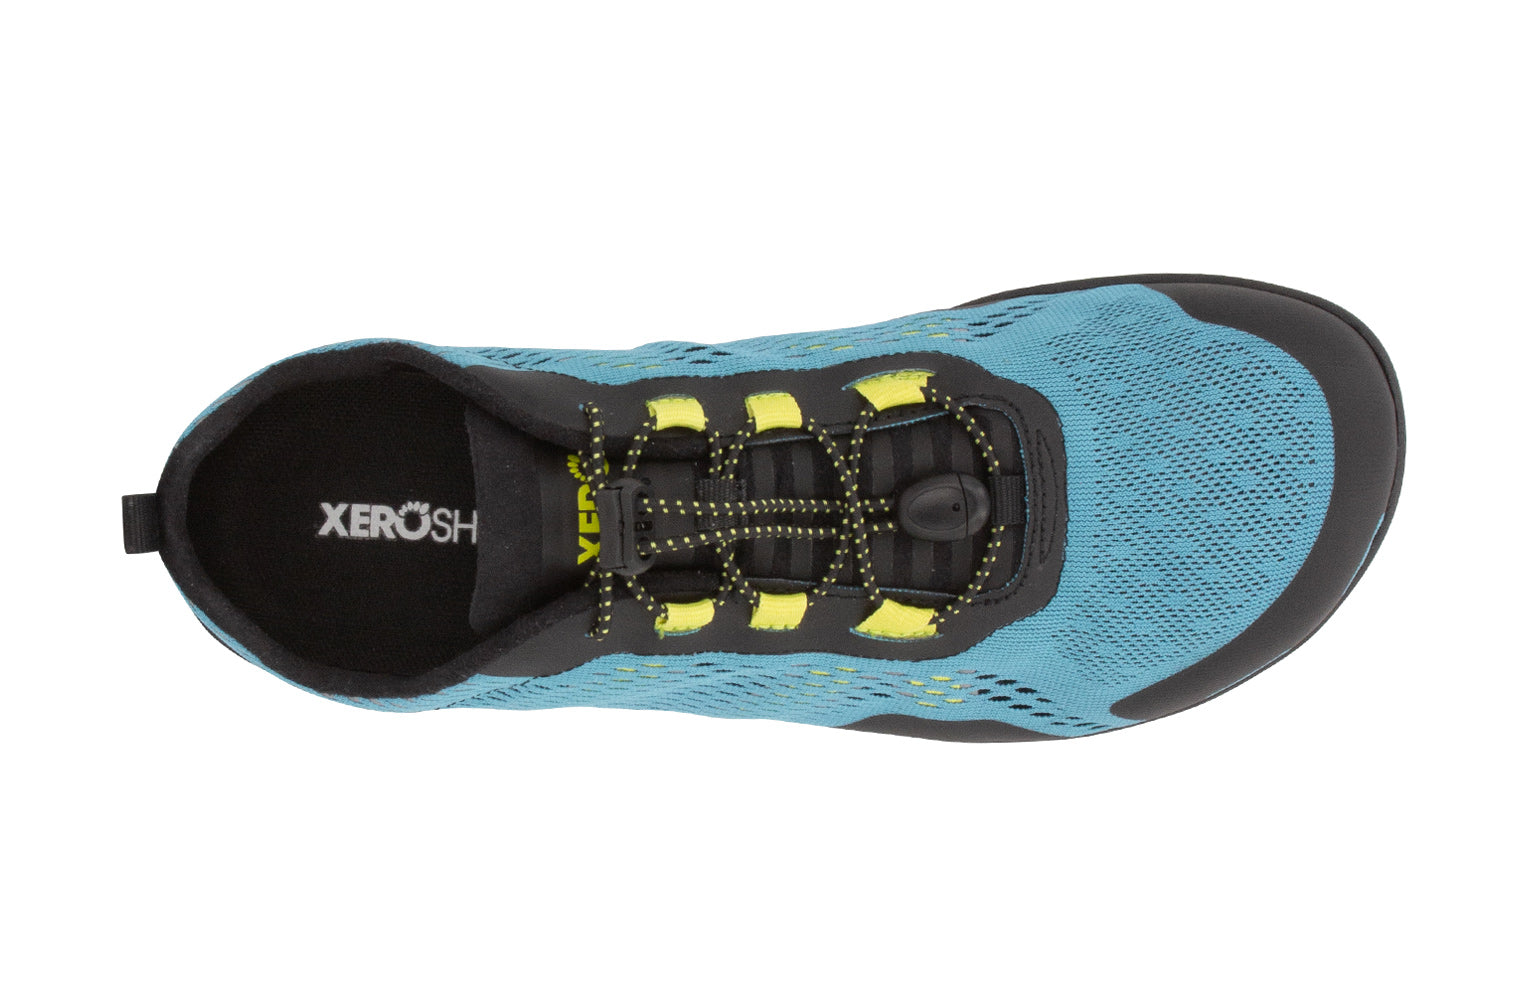 Xero Shoes Aqua X Sport barfods vand træningssko til mænd i farven surf, top